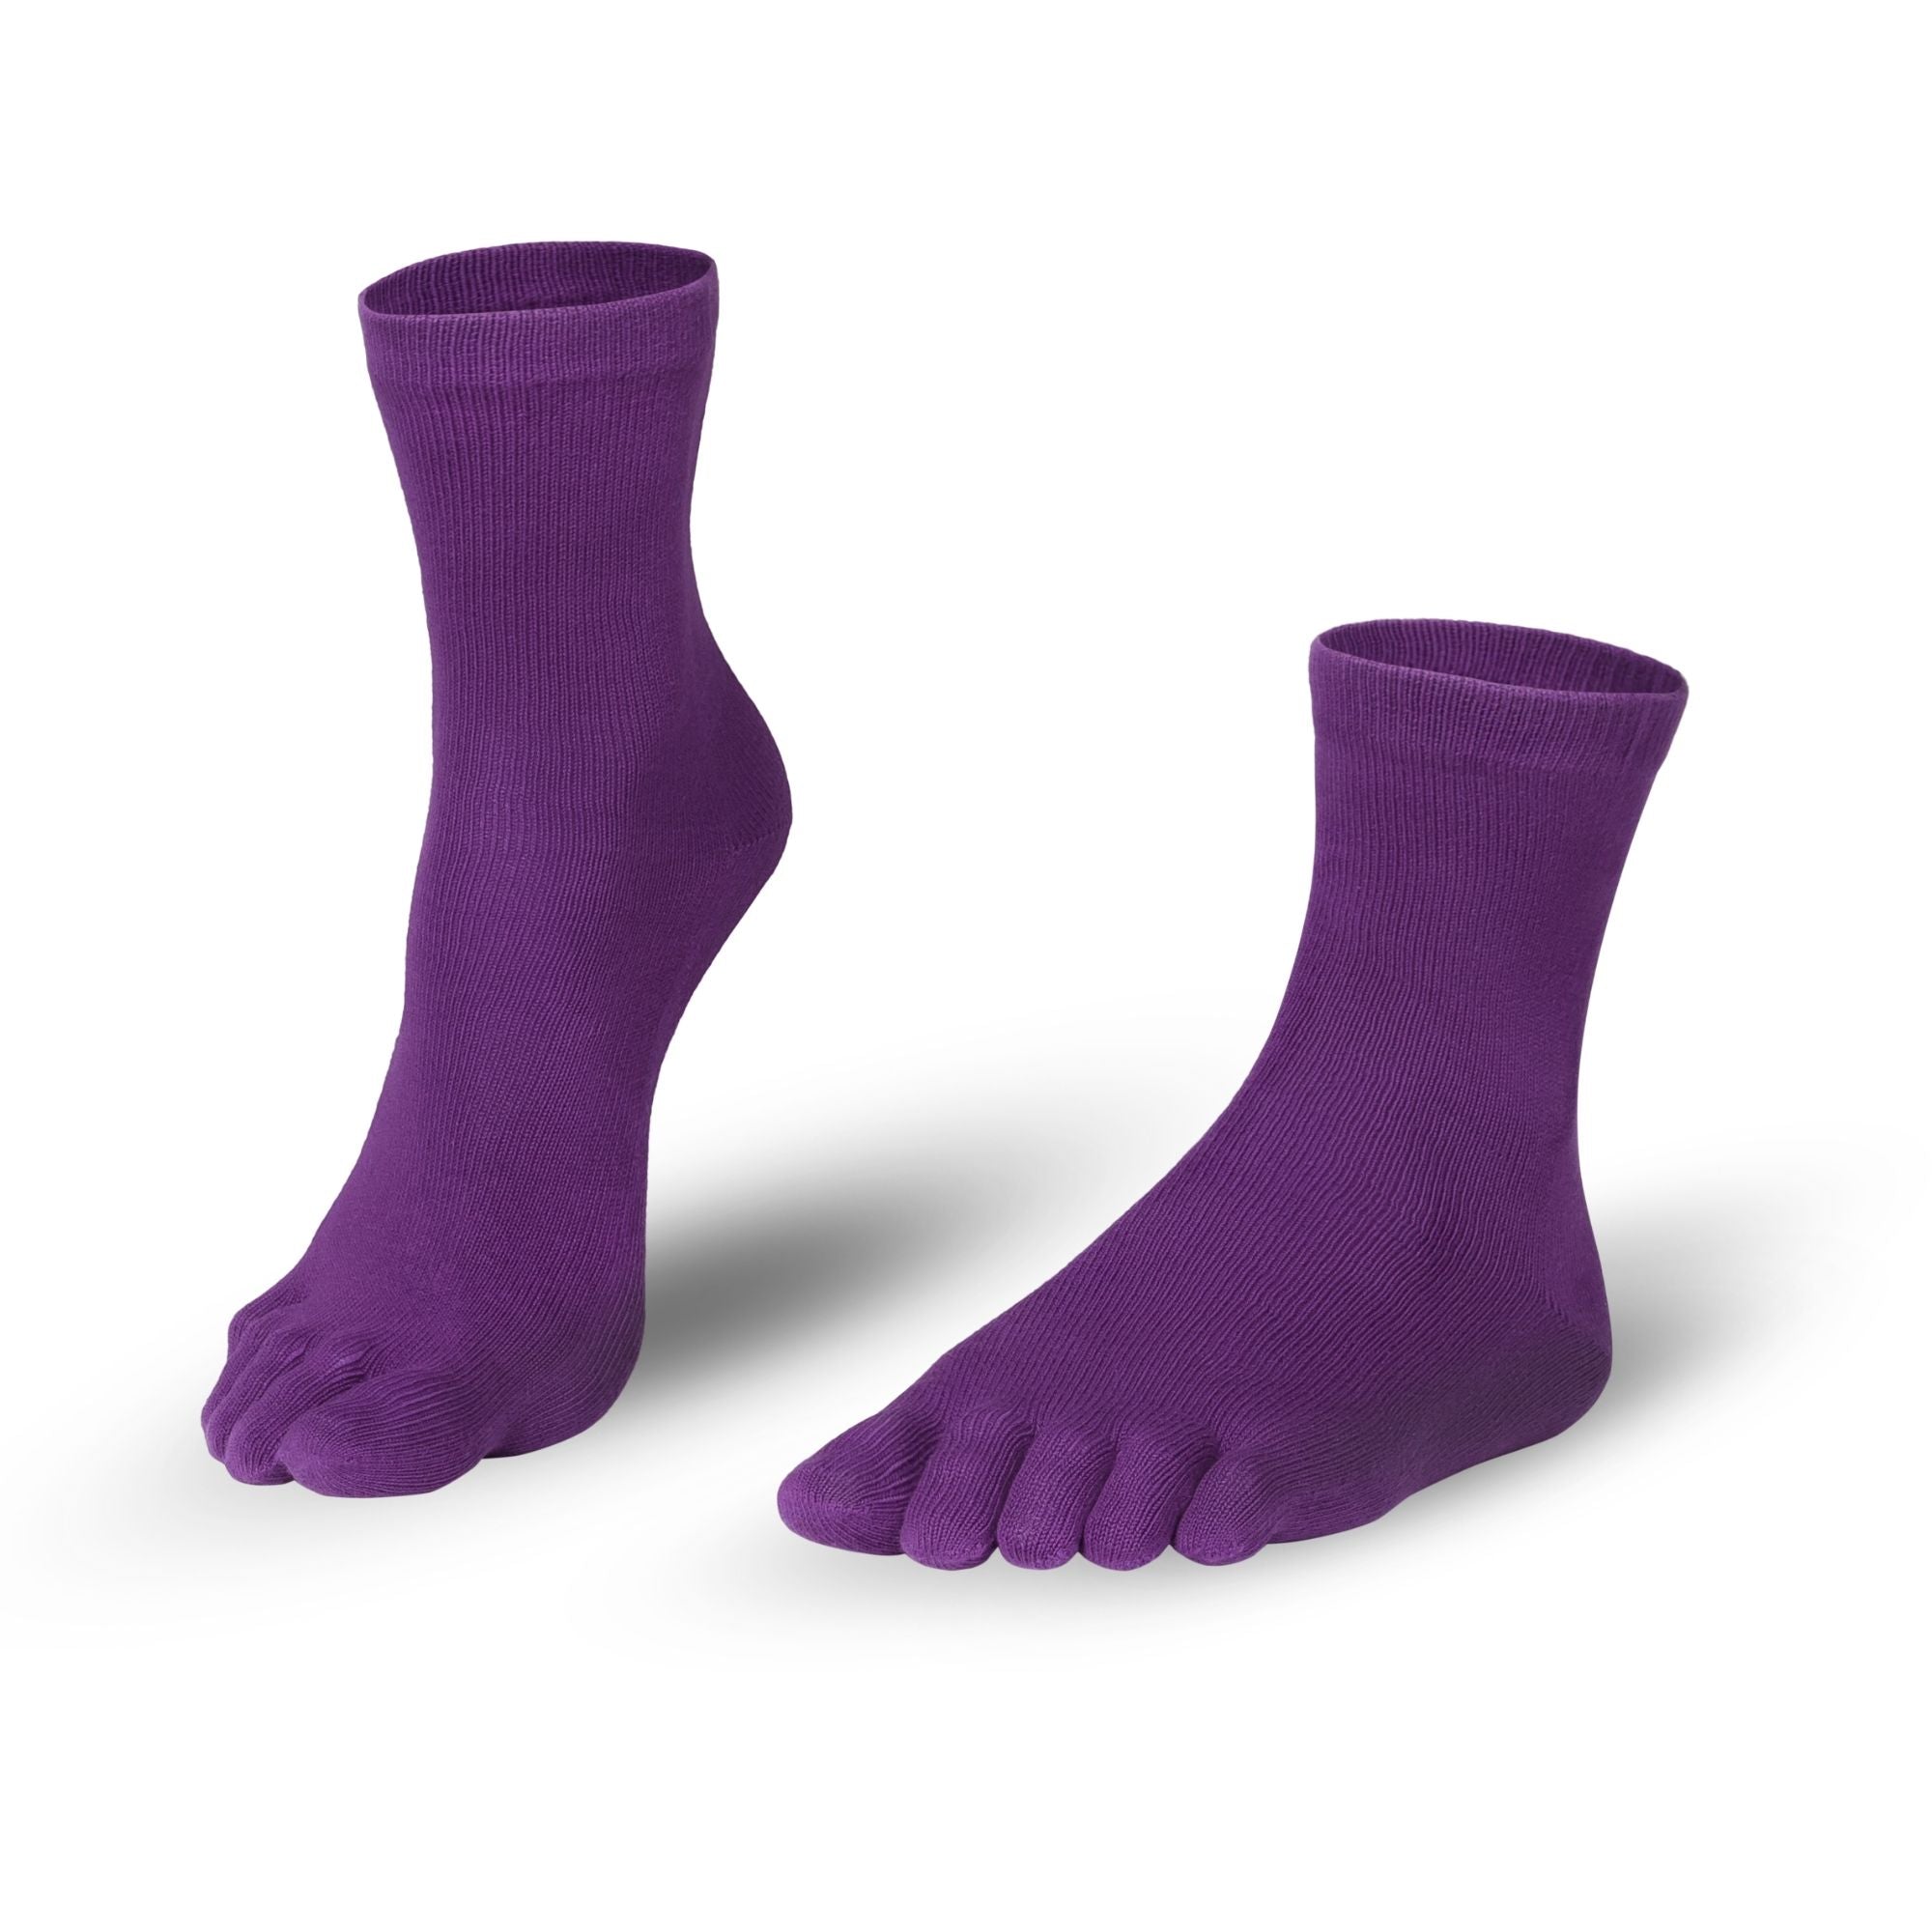 Katoenenteensokken sokken in lichtgrijs voor mannen en vrouwen